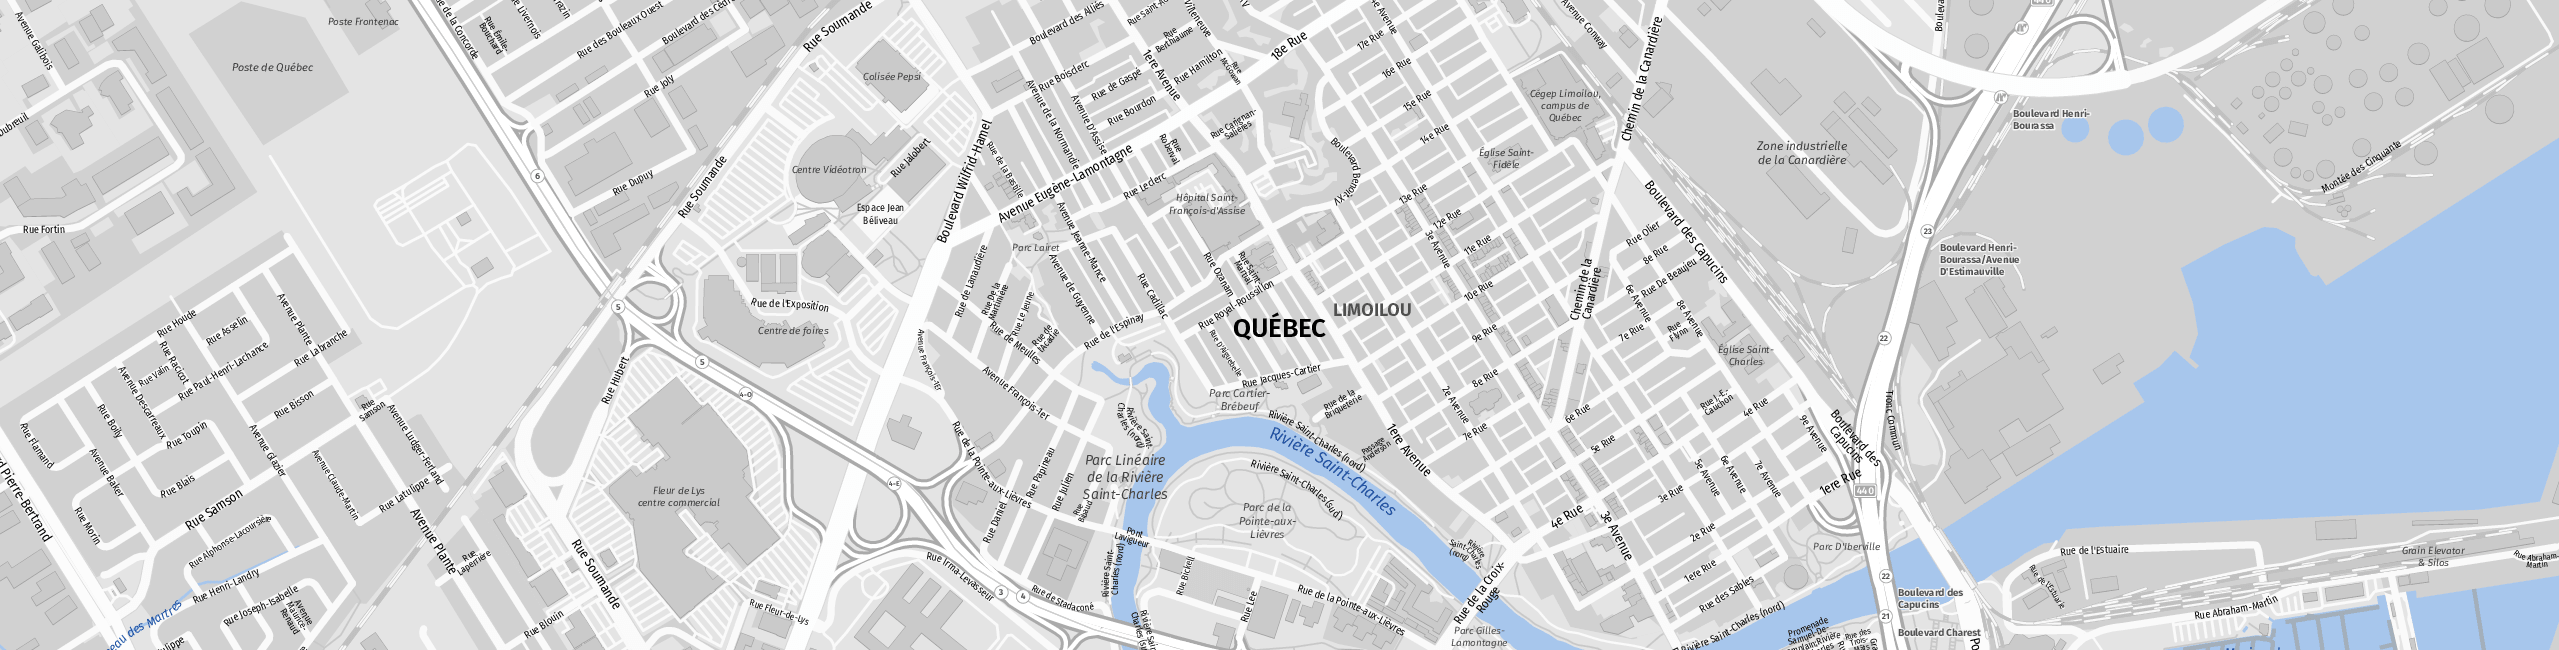 Stadtplan Quebec zum Downloaden.